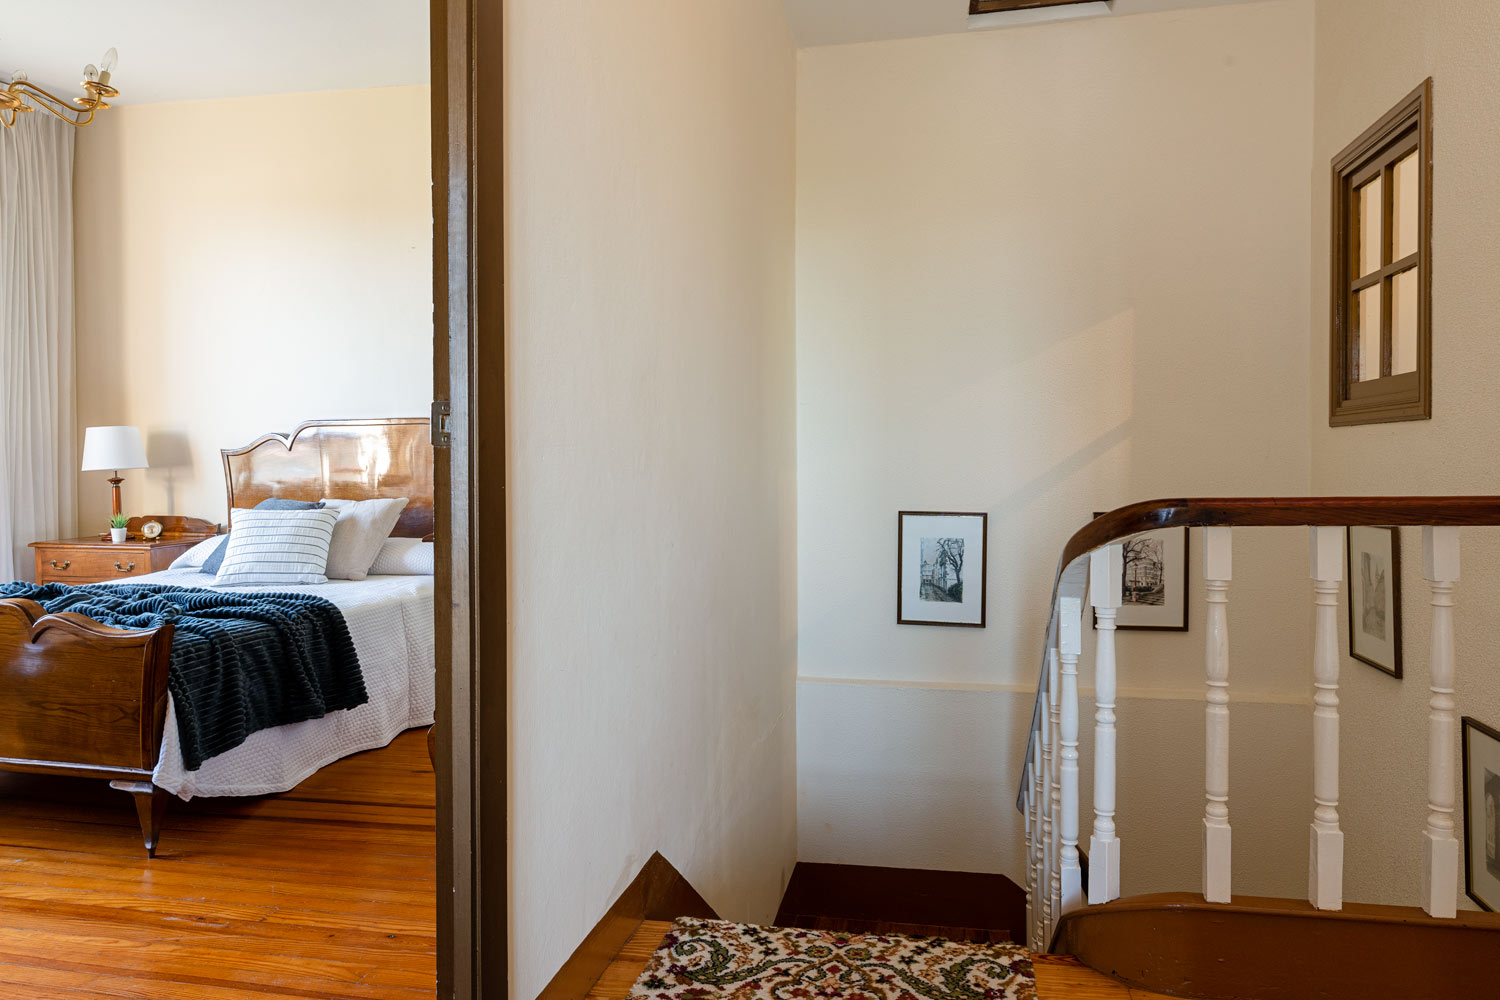 Escaleras y dormitorio matrimonio en unifamiliar Osedo_ Preparación con Home Staging_textiles azules y neutros